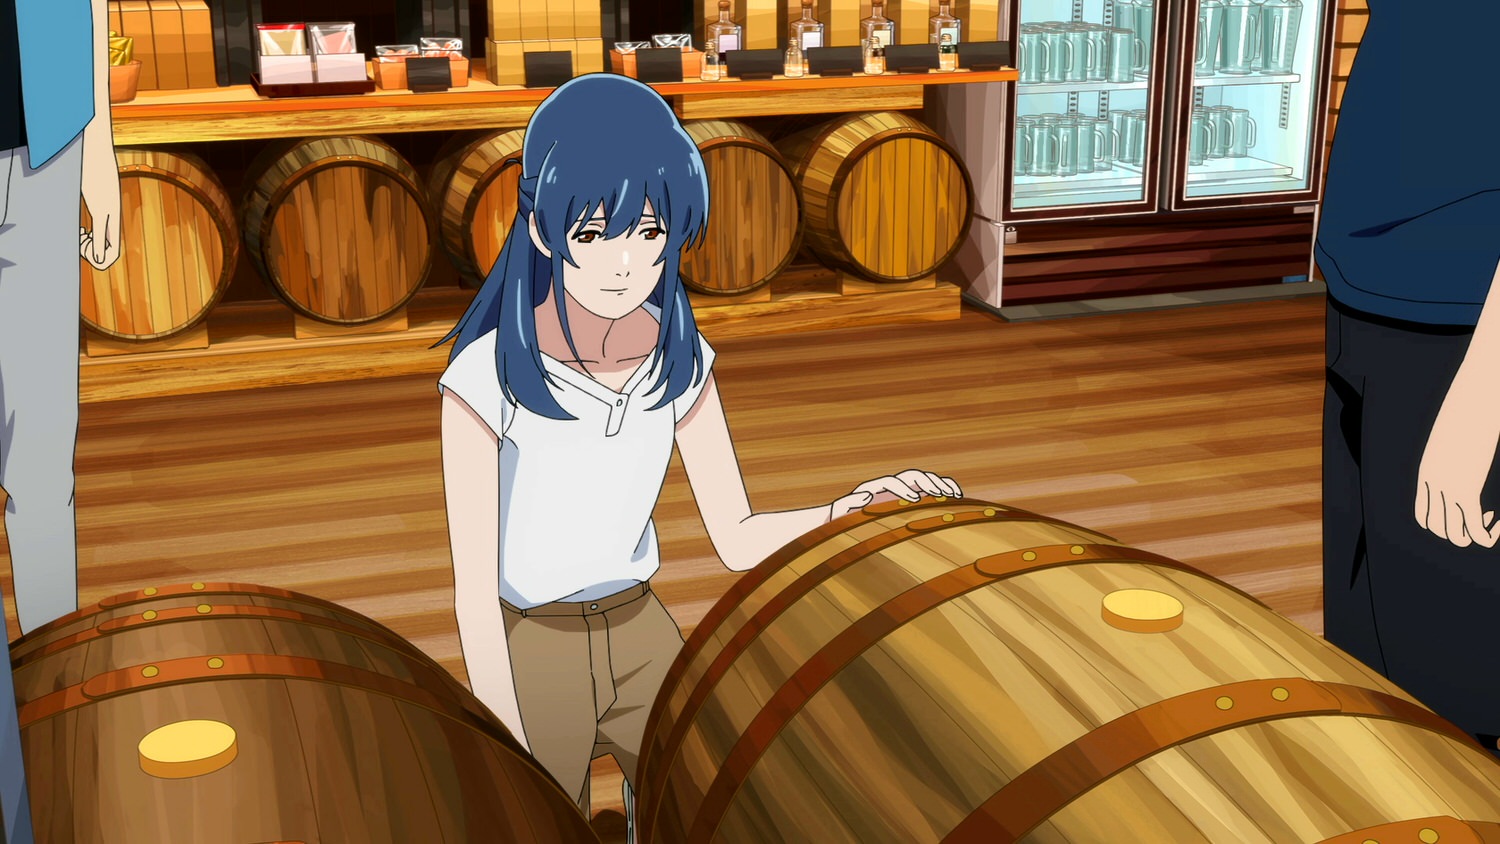 電影【歡迎來到駒田蒸餾所】影片資訊：日本動畫首創完整呈現威士忌釀造過程